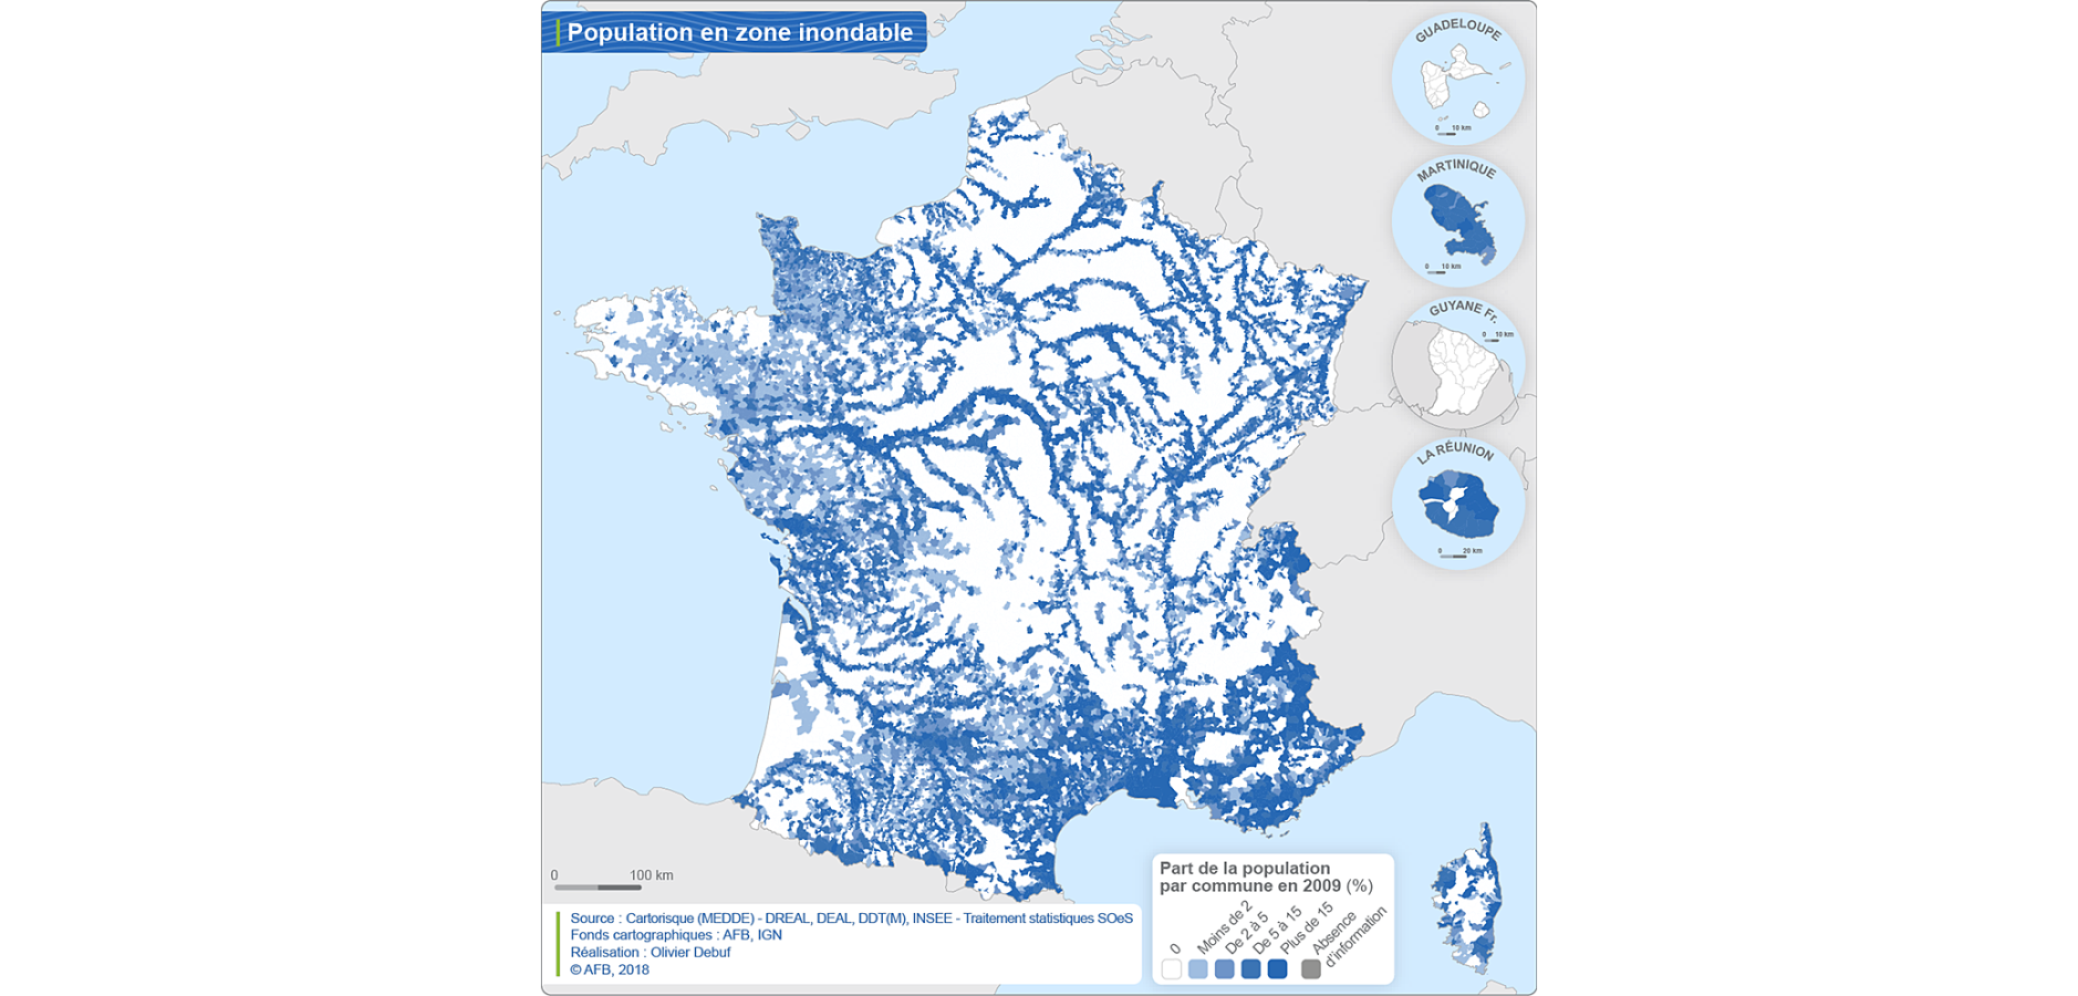 Carte Population en zone inondable par communes en 2009